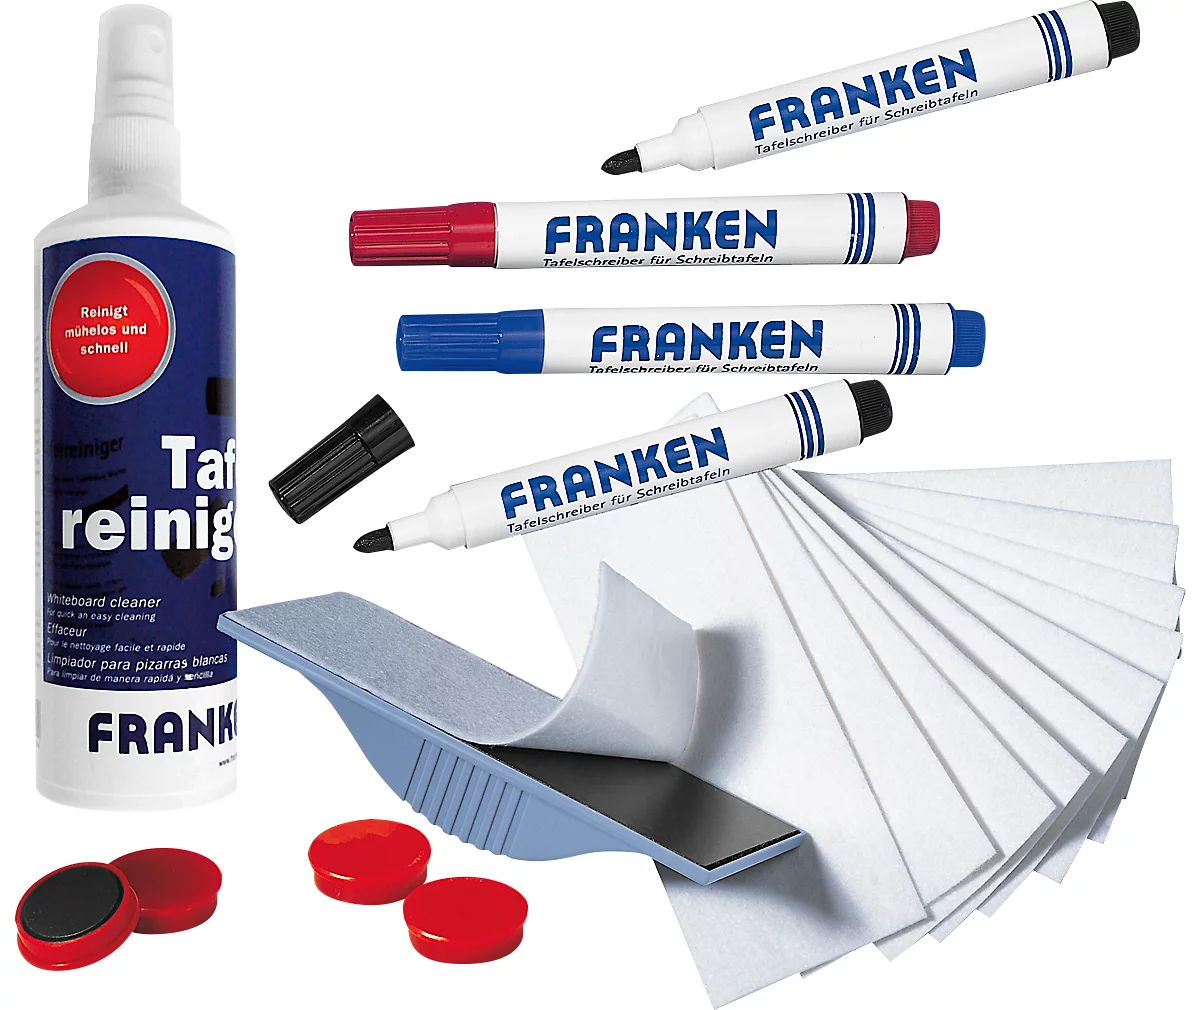 Franken Starter Set Junior Set Z1941-X, con spray de 125 ml, limpiador de pizarra, imanes y rotulador para pizarra